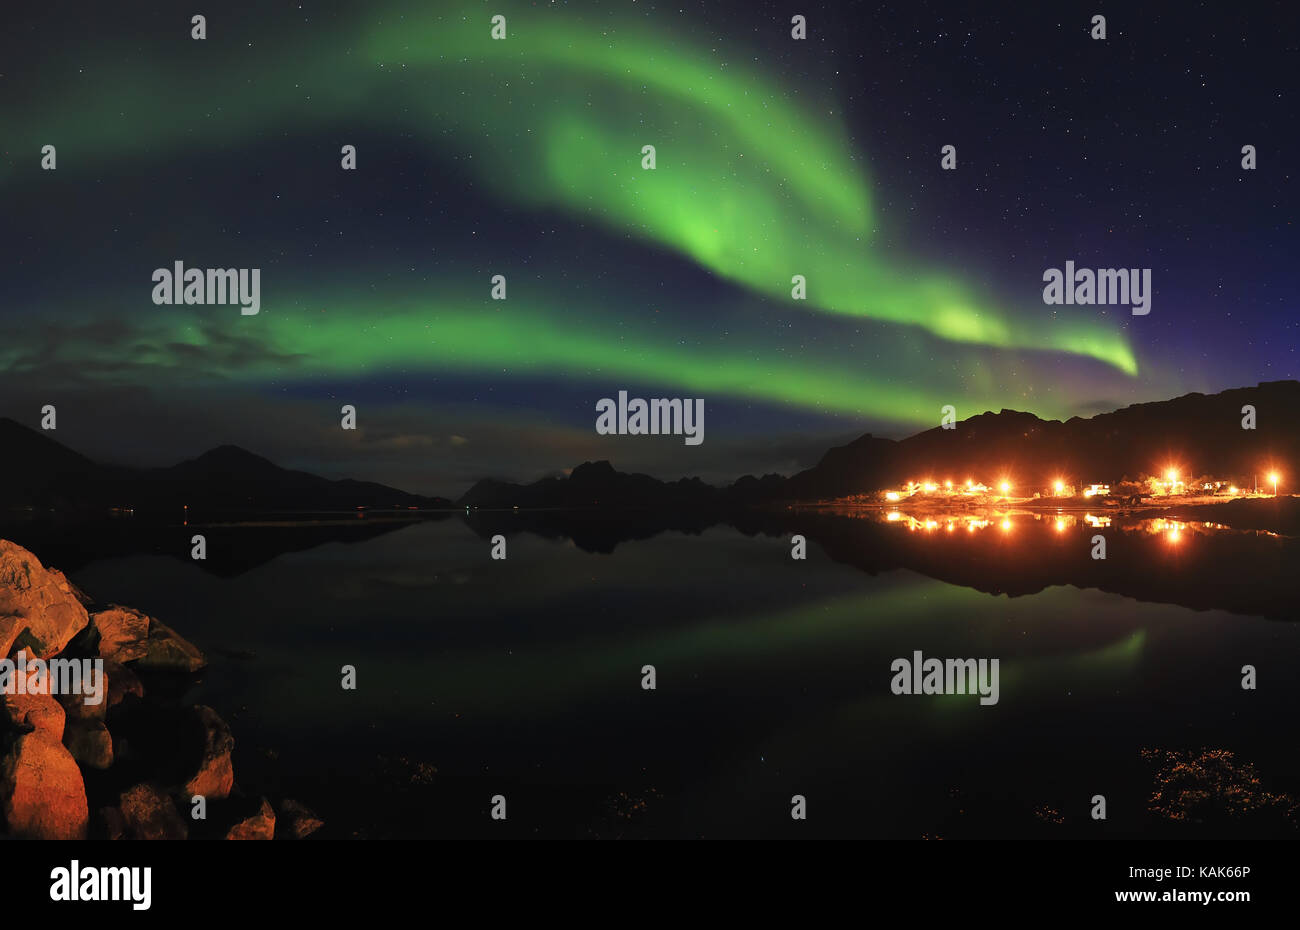 Green luci del nord nella notte cielo stellato. luci del nord si riflettono nel lago nel piccolo villaggio norvegese città. bella nord notte paesaggio. Foto Stock